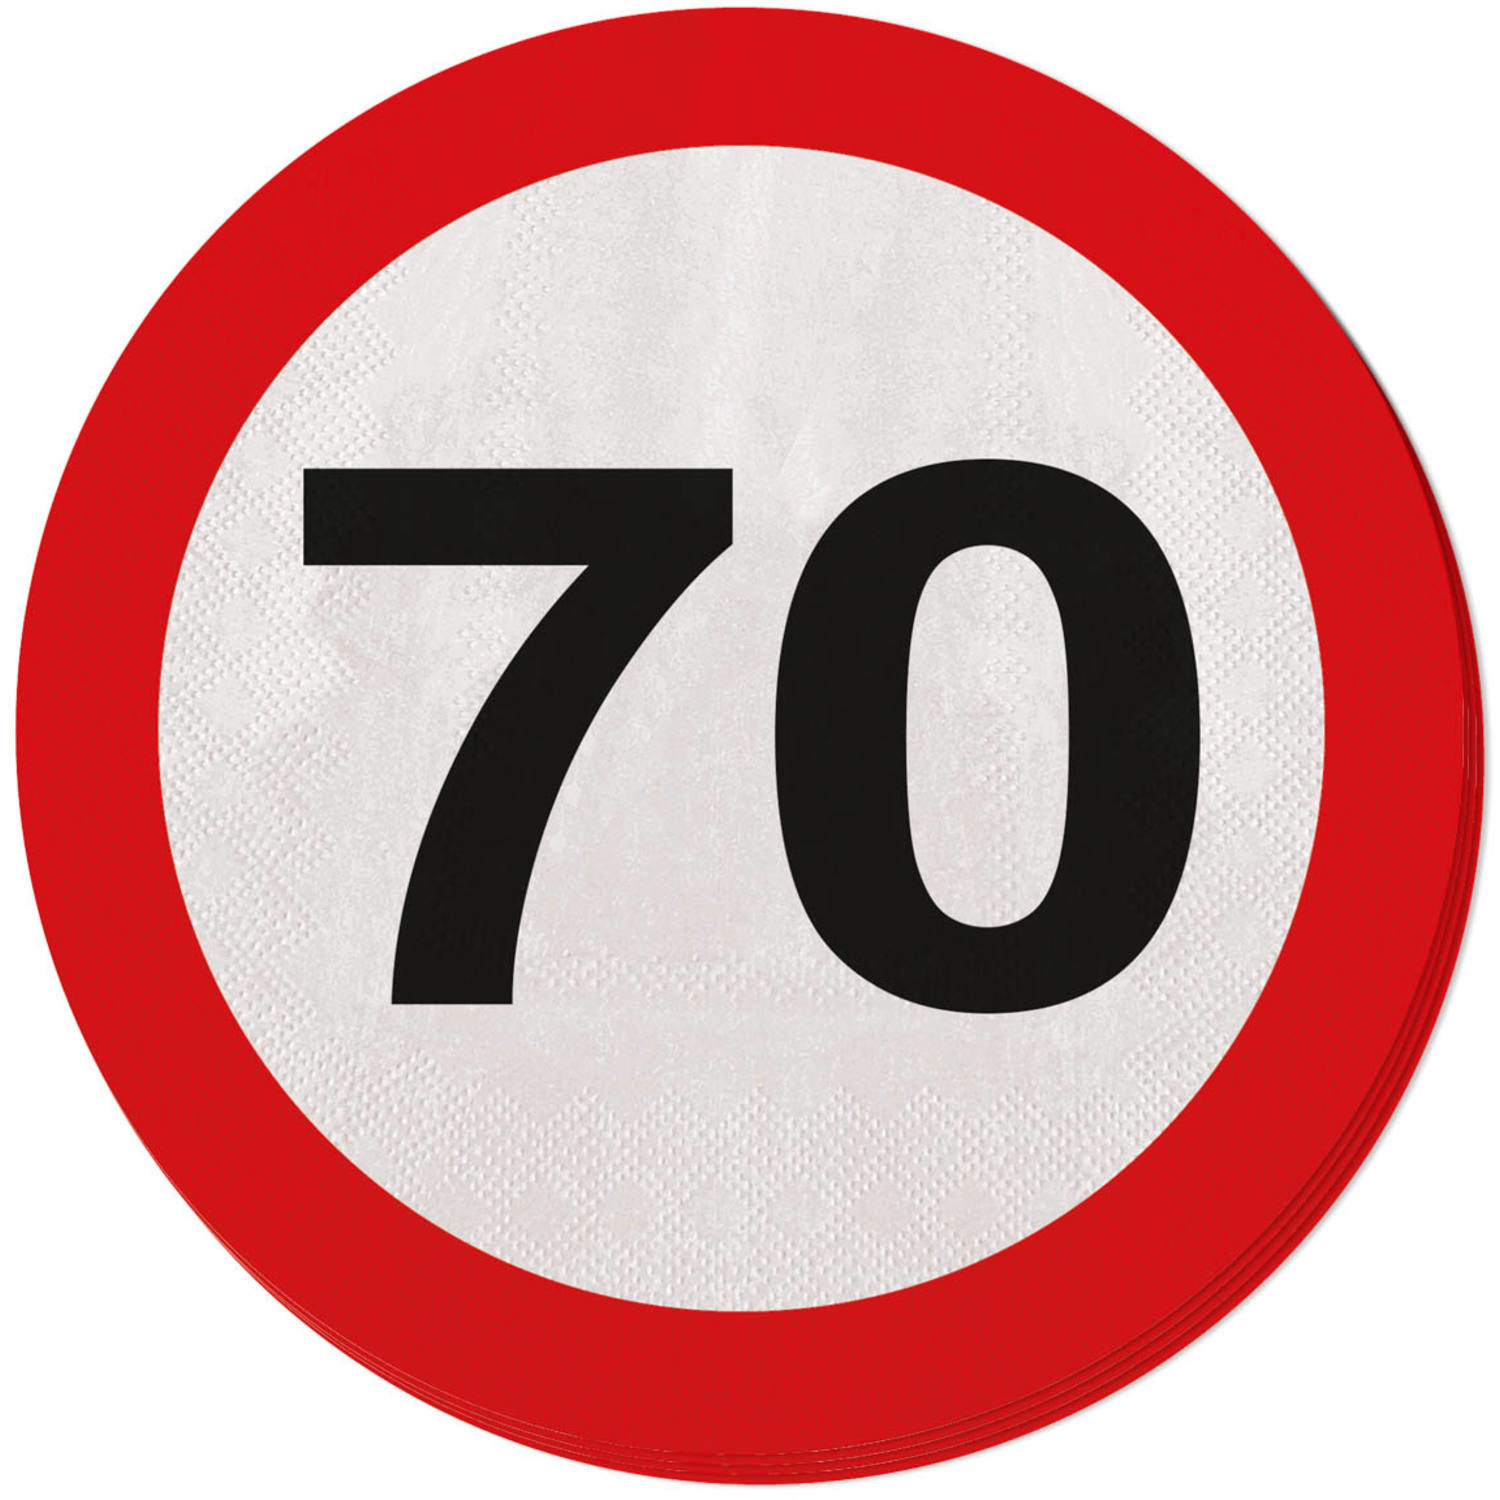 20 кругом было. Знак 70. Знак 70 на дороге. Дорожные знаки с цифрами. Дорожный знак круг.